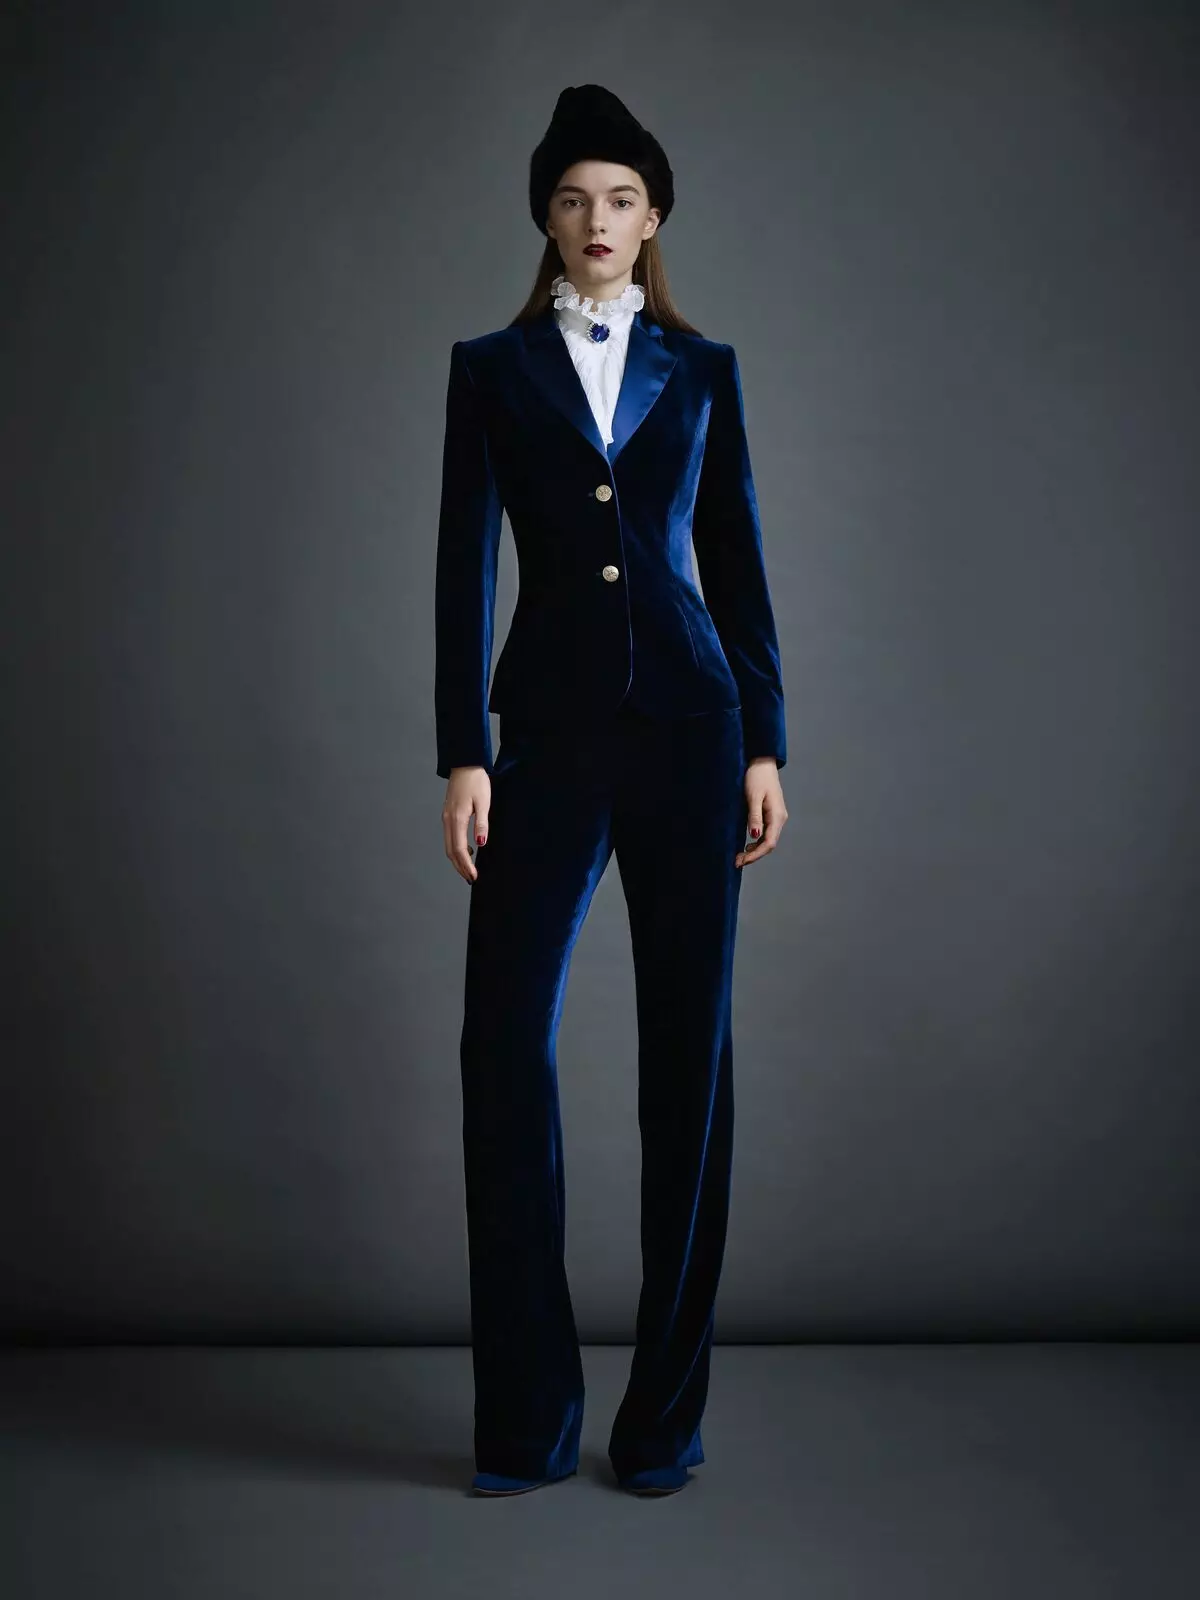 Κοστούμια γυναικών παντελονιών 2021 (242 φωτογραφίες): νέες και τάσεις μόδας, στυλ Chanel 14844_128